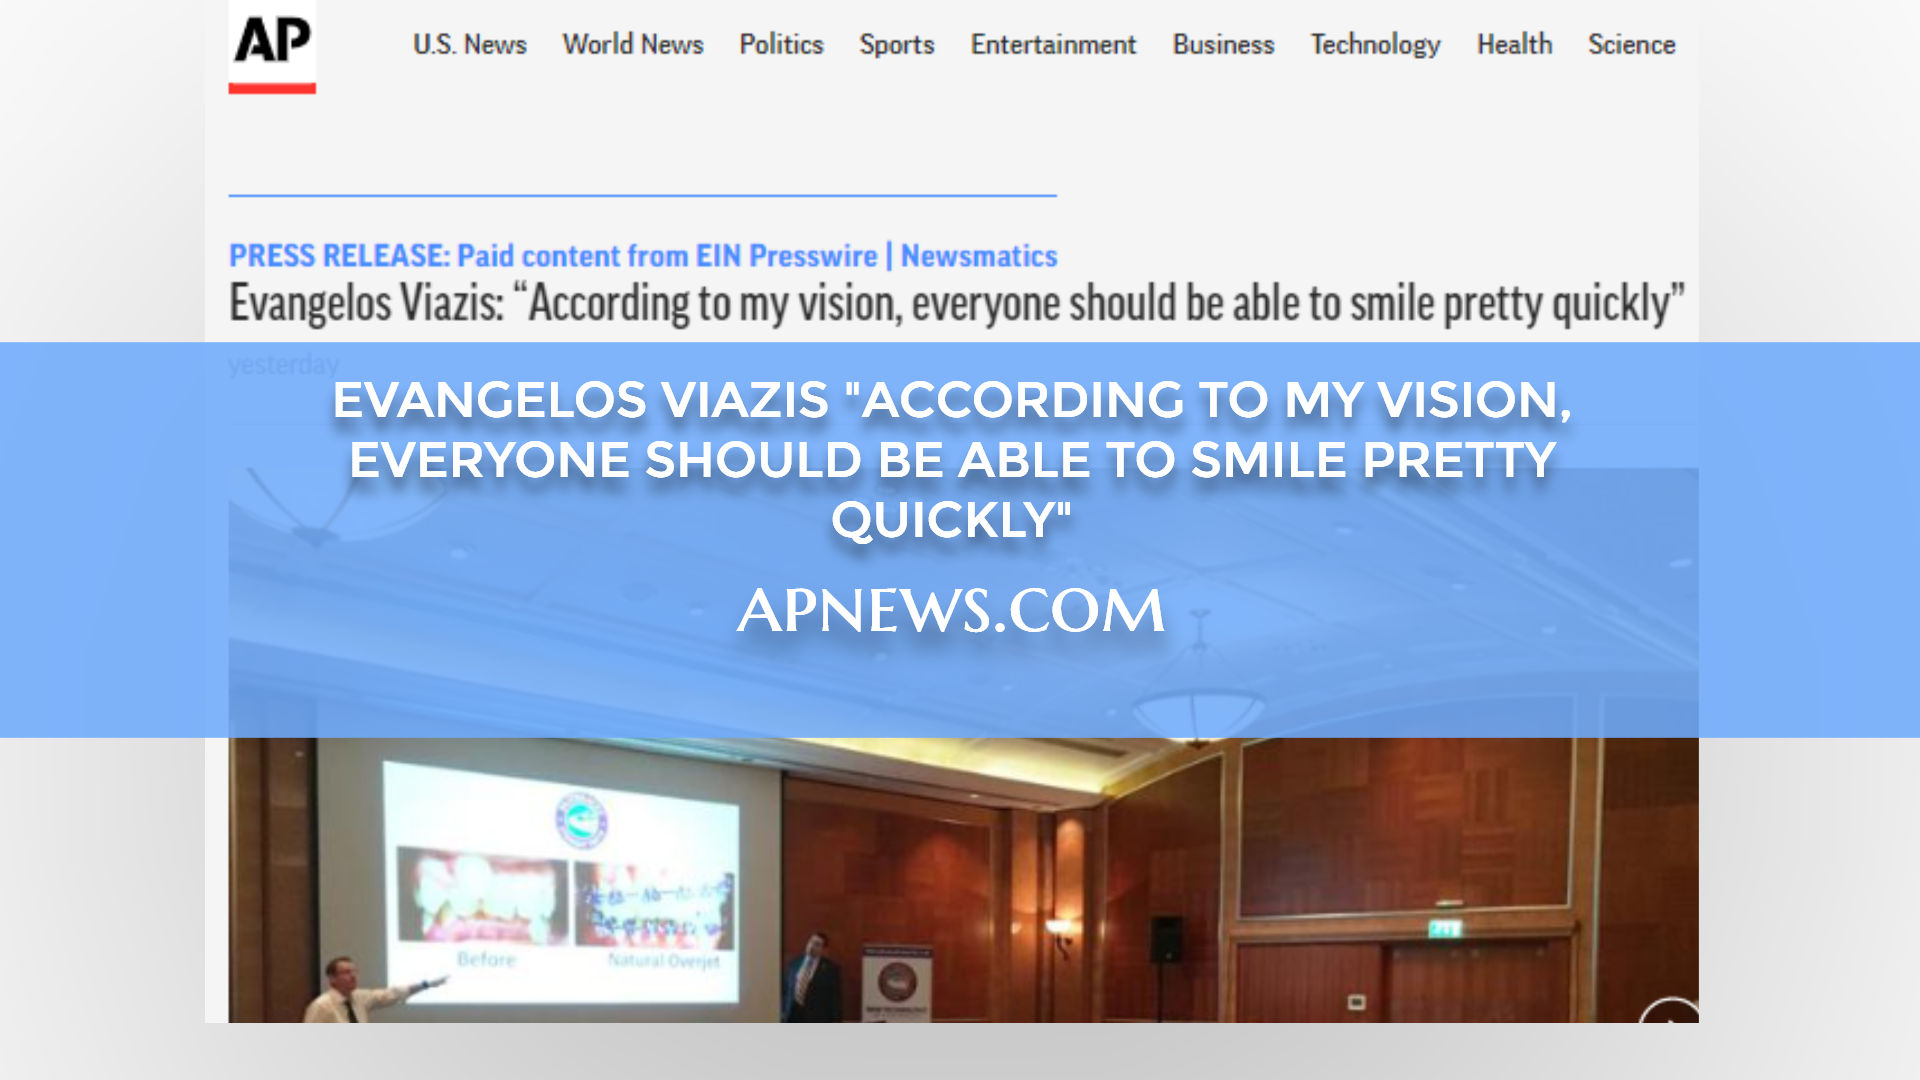 Νέο Άρθρο στο Apnews.com: Evangelos Viazis "According to my vision, everyone should be able to smile pretty quickly"